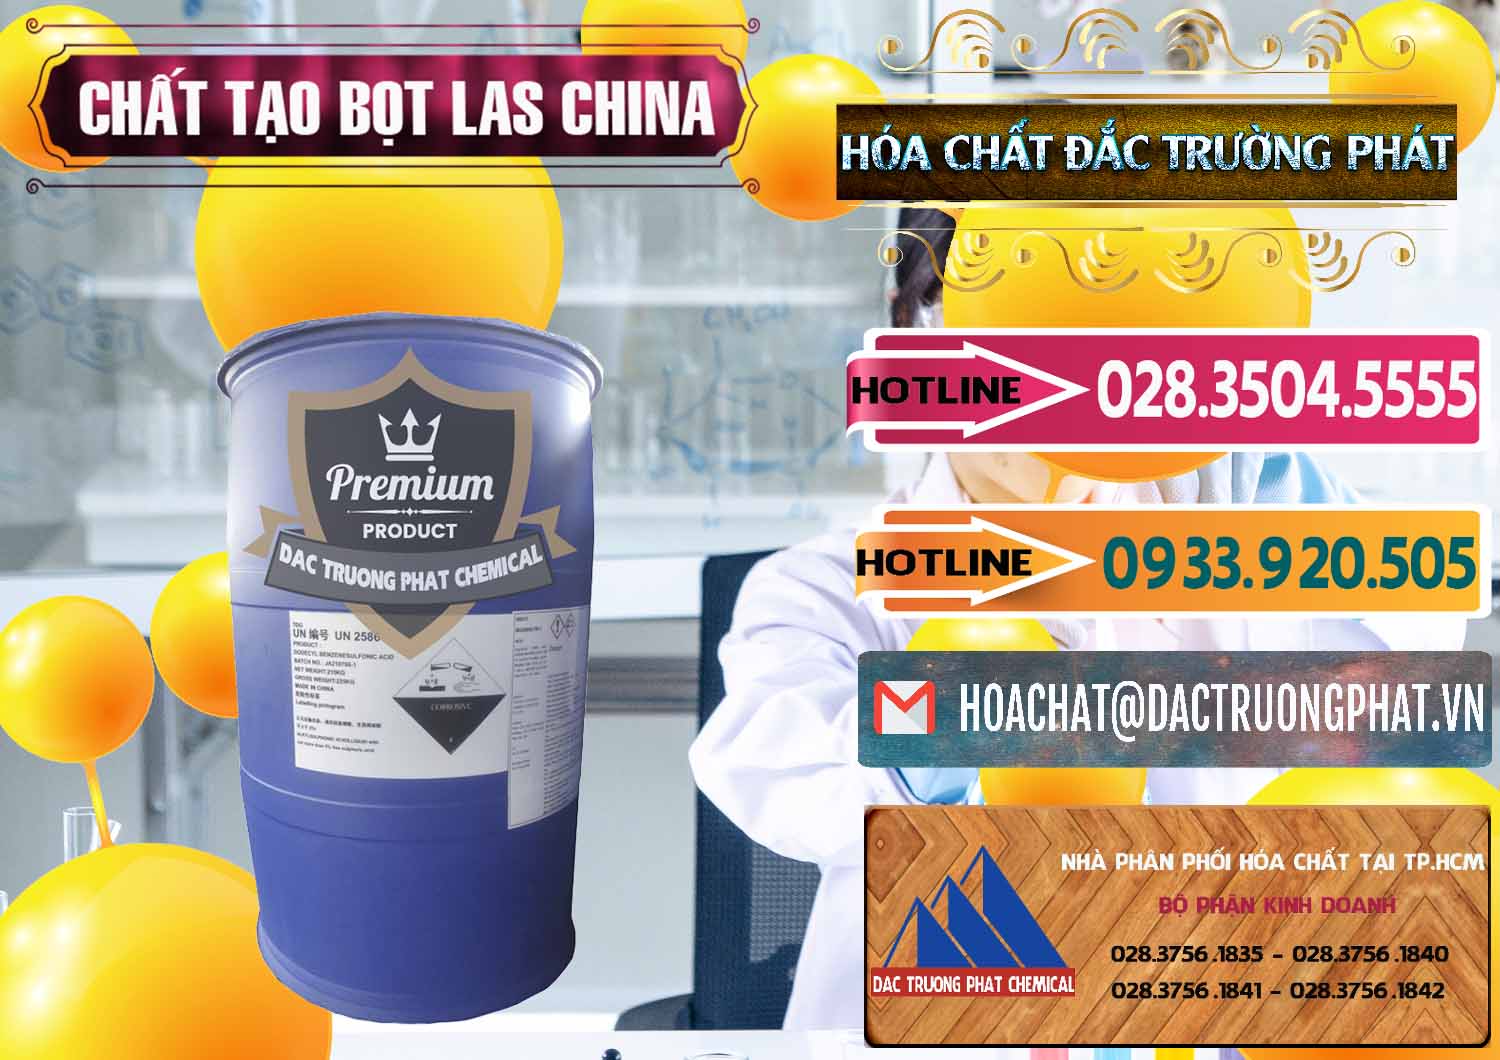 Cty nhập khẩu ( bán ) Chất tạo bọt Las Trung Quốc China - 0451 - Công ty chuyên nhập khẩu & cung cấp hóa chất tại TP.HCM - dactruongphat.vn